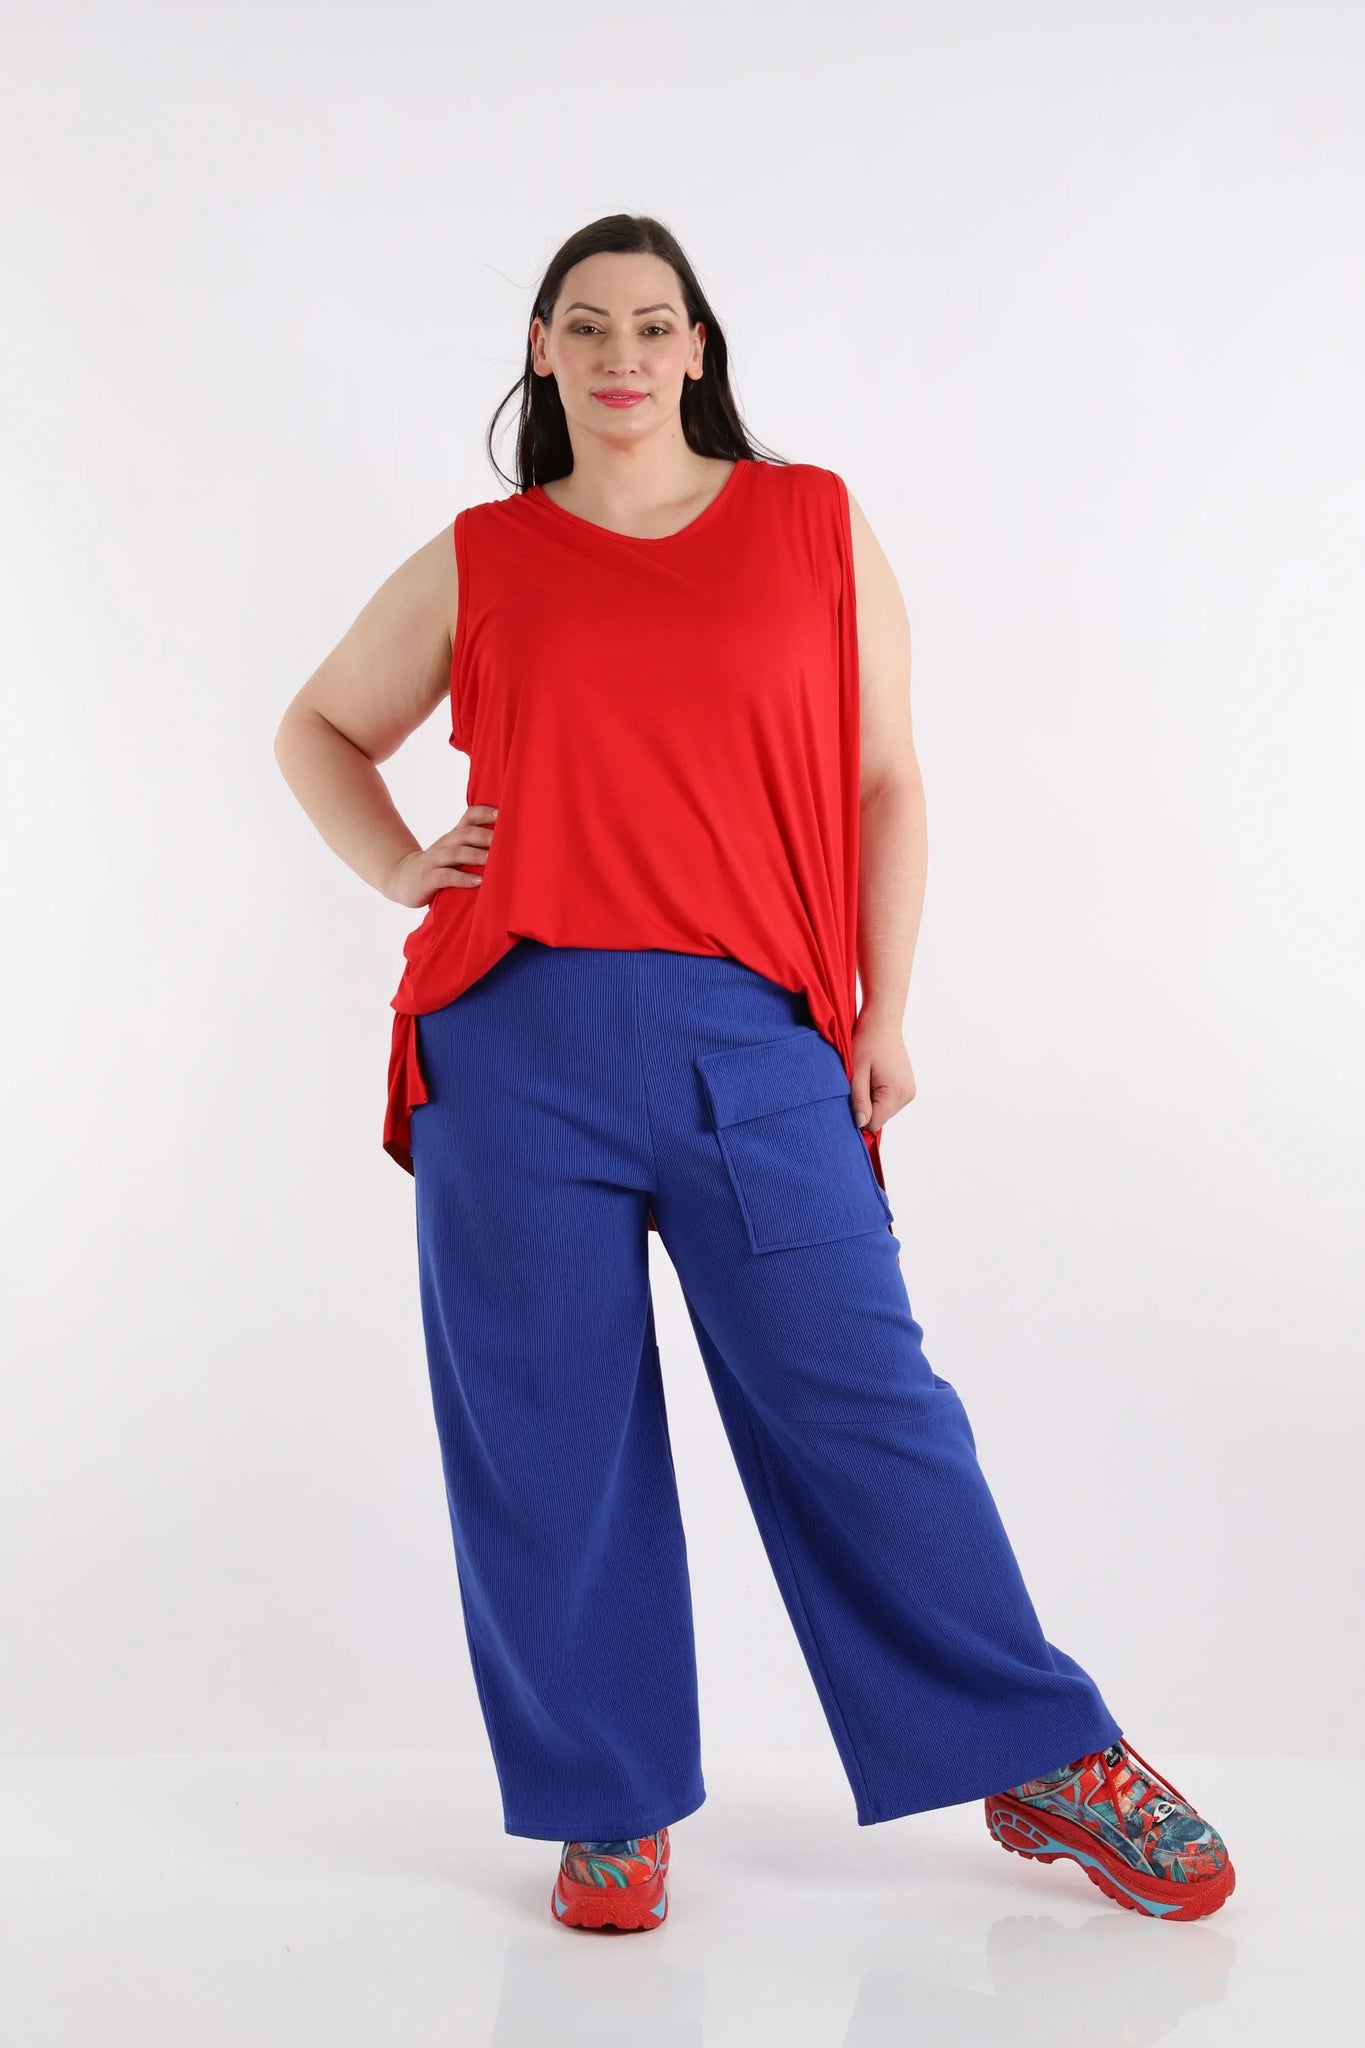 Hose von AKH Fashion aus Baumwolle in gerader Form, 1252.06907, Blau, Unifarben, Schick